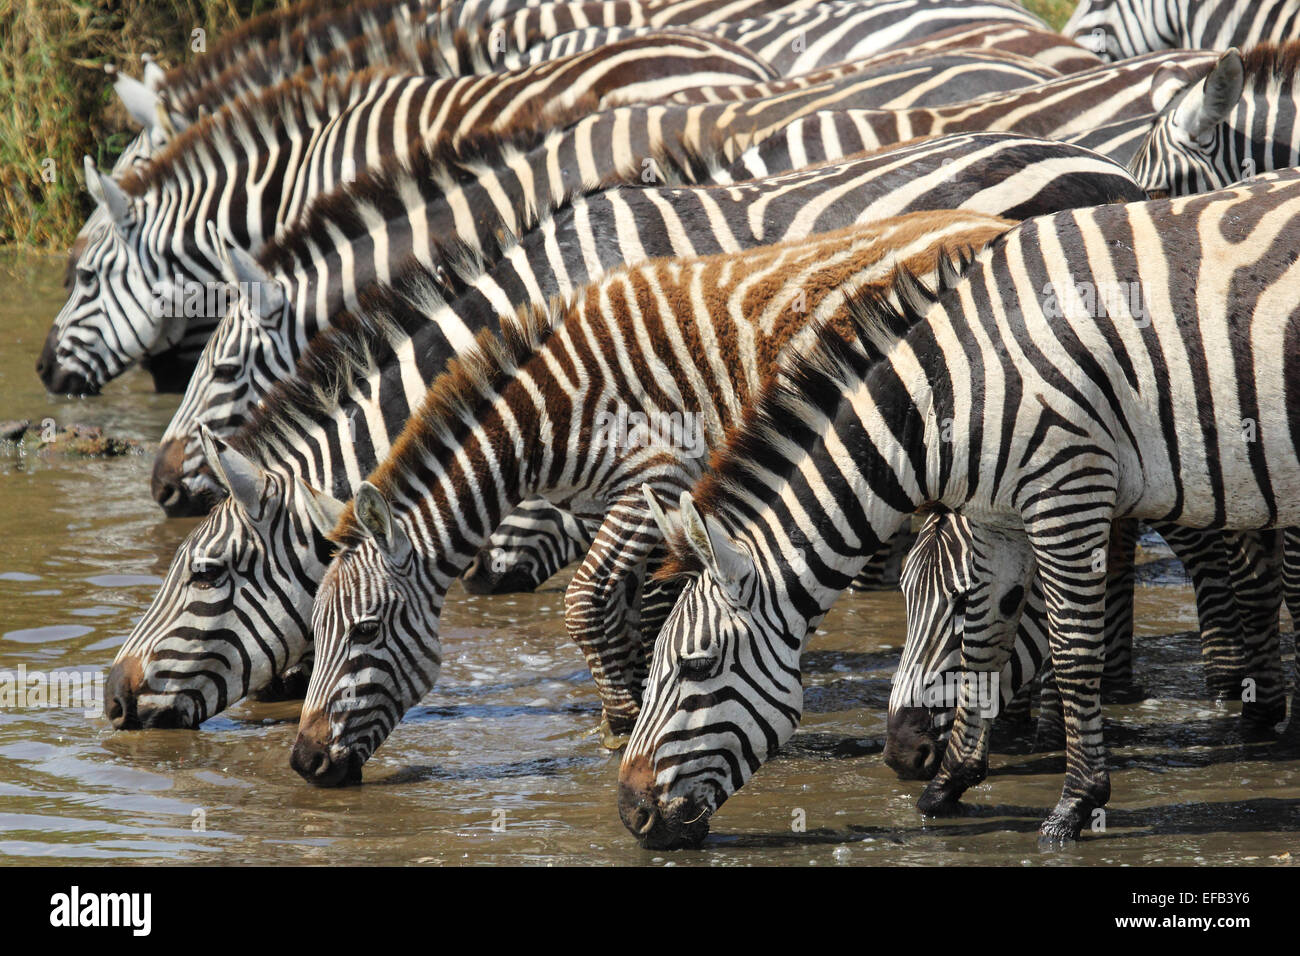 Un groupe de zèbres, Equus quagga, boire à partir d'un point d'eau dans le Parc National du Serengeti, Tanzanie Banque D'Images